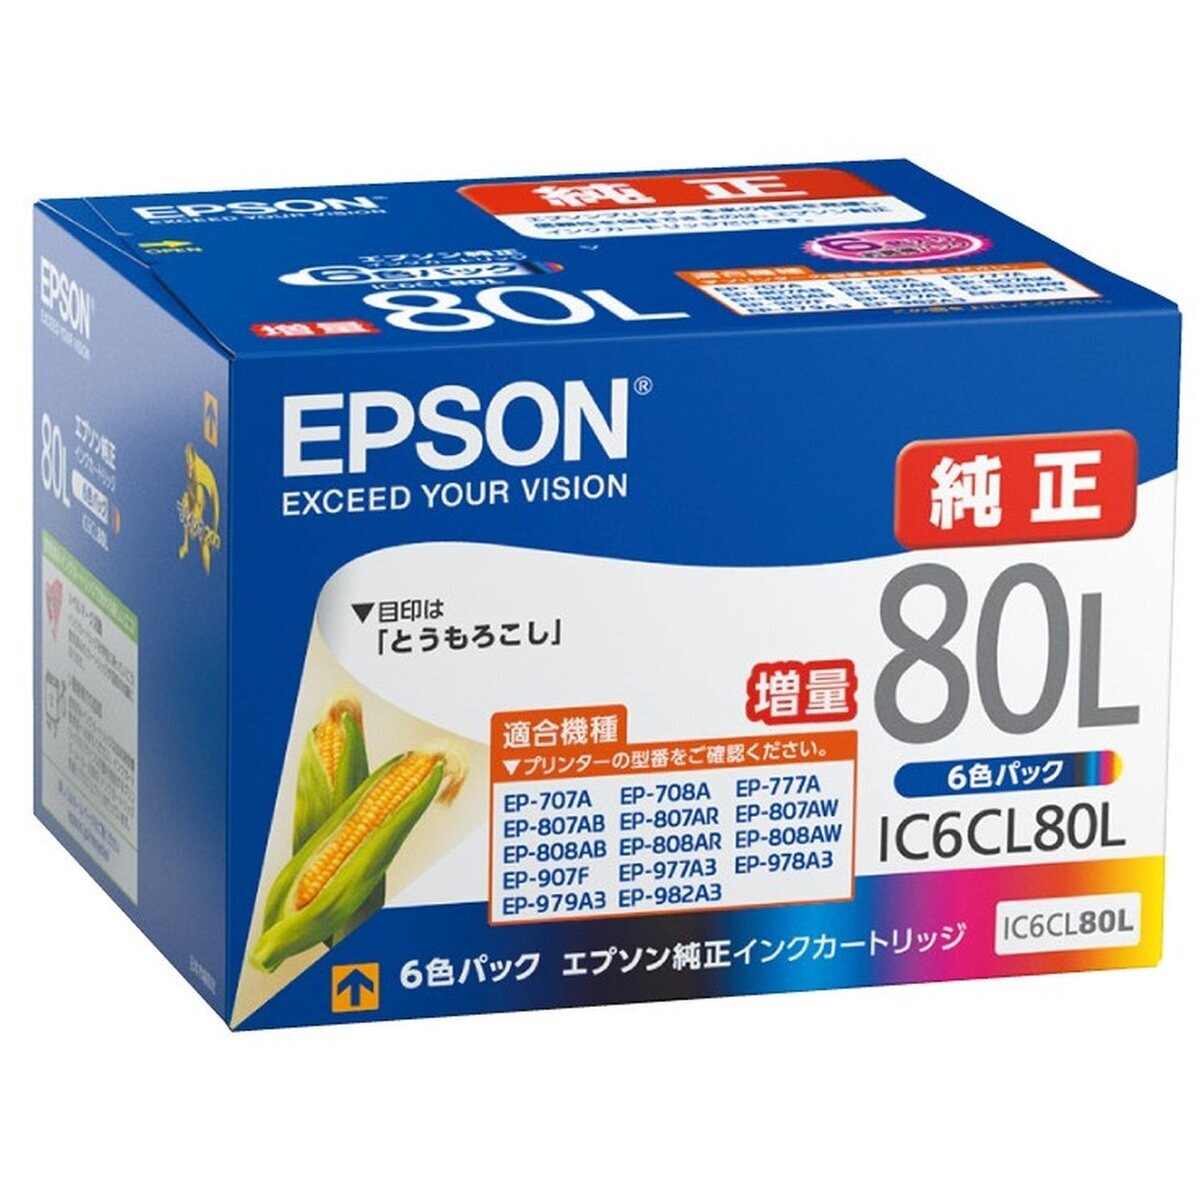 エプソン インクカートリッジ IC6CL80L 6色パック 増量 とうもろこし | Costco Japan